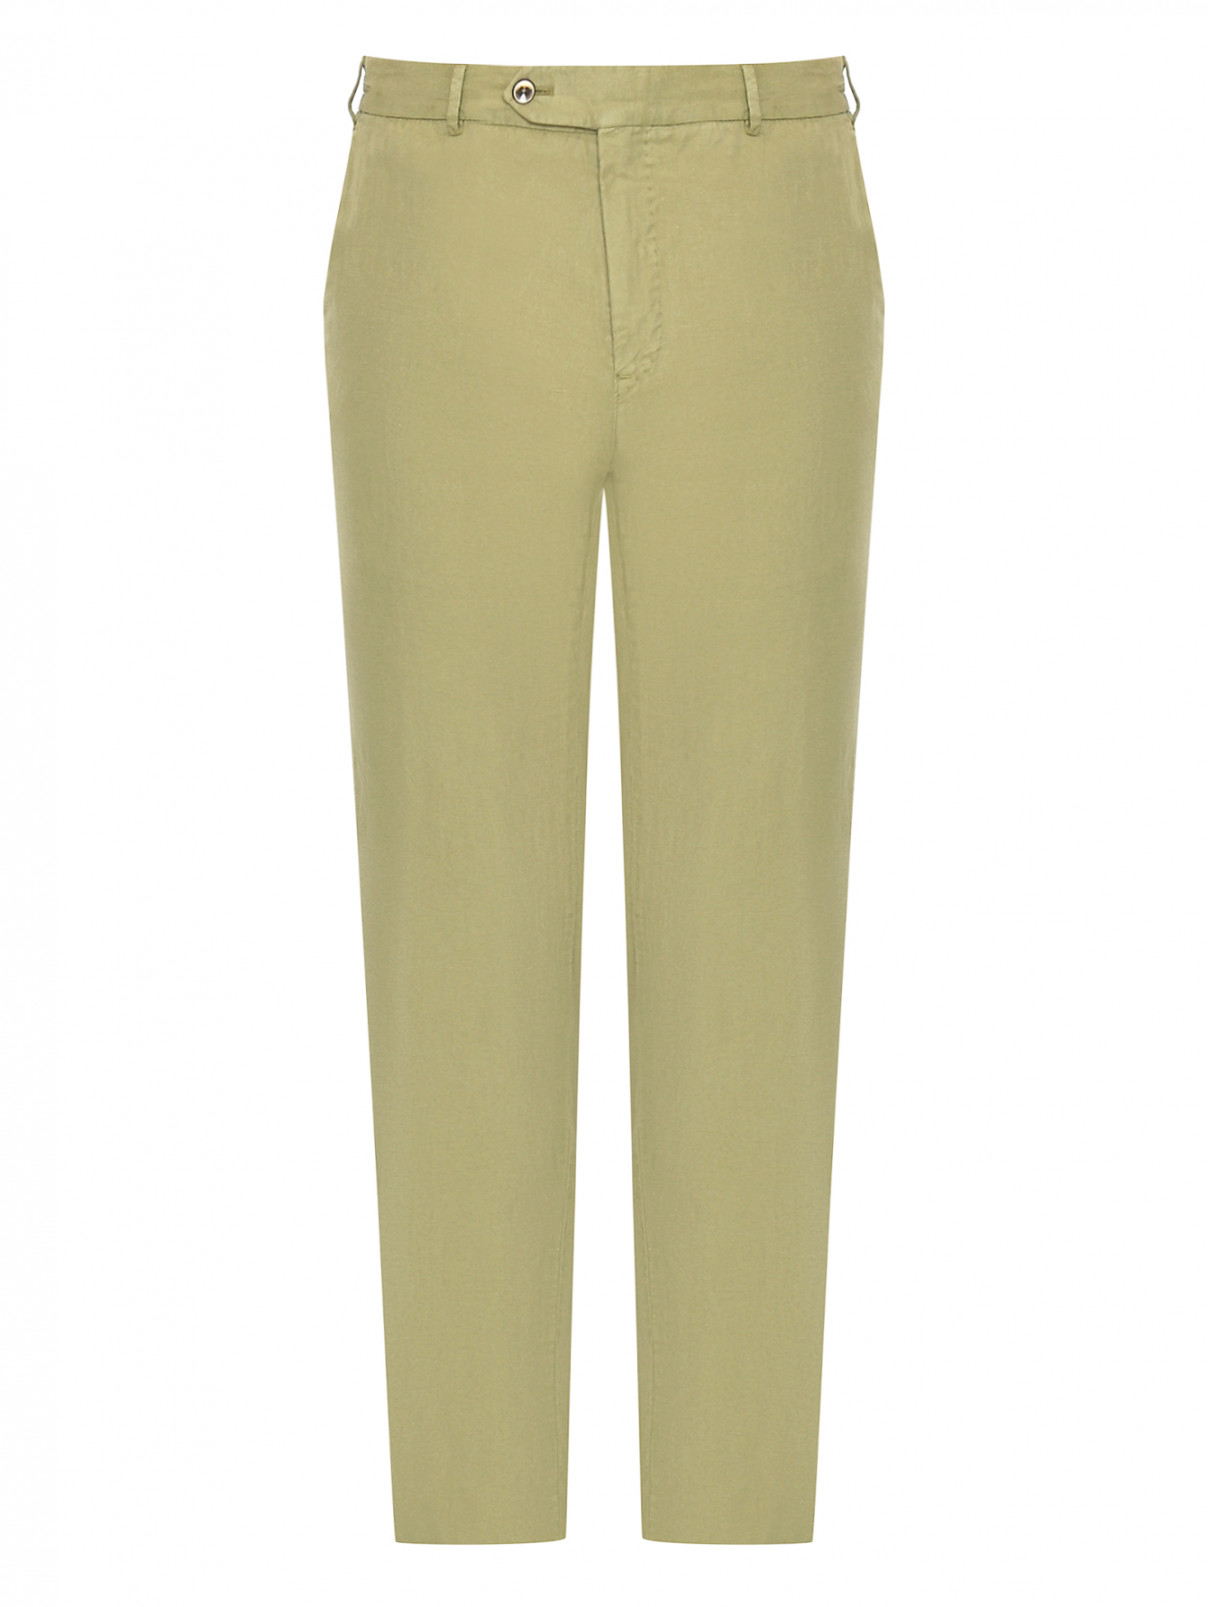 Однотонные брюки прямого кроя с карманами PT Torino  –  Общий вид  – Цвет:  Зеленый